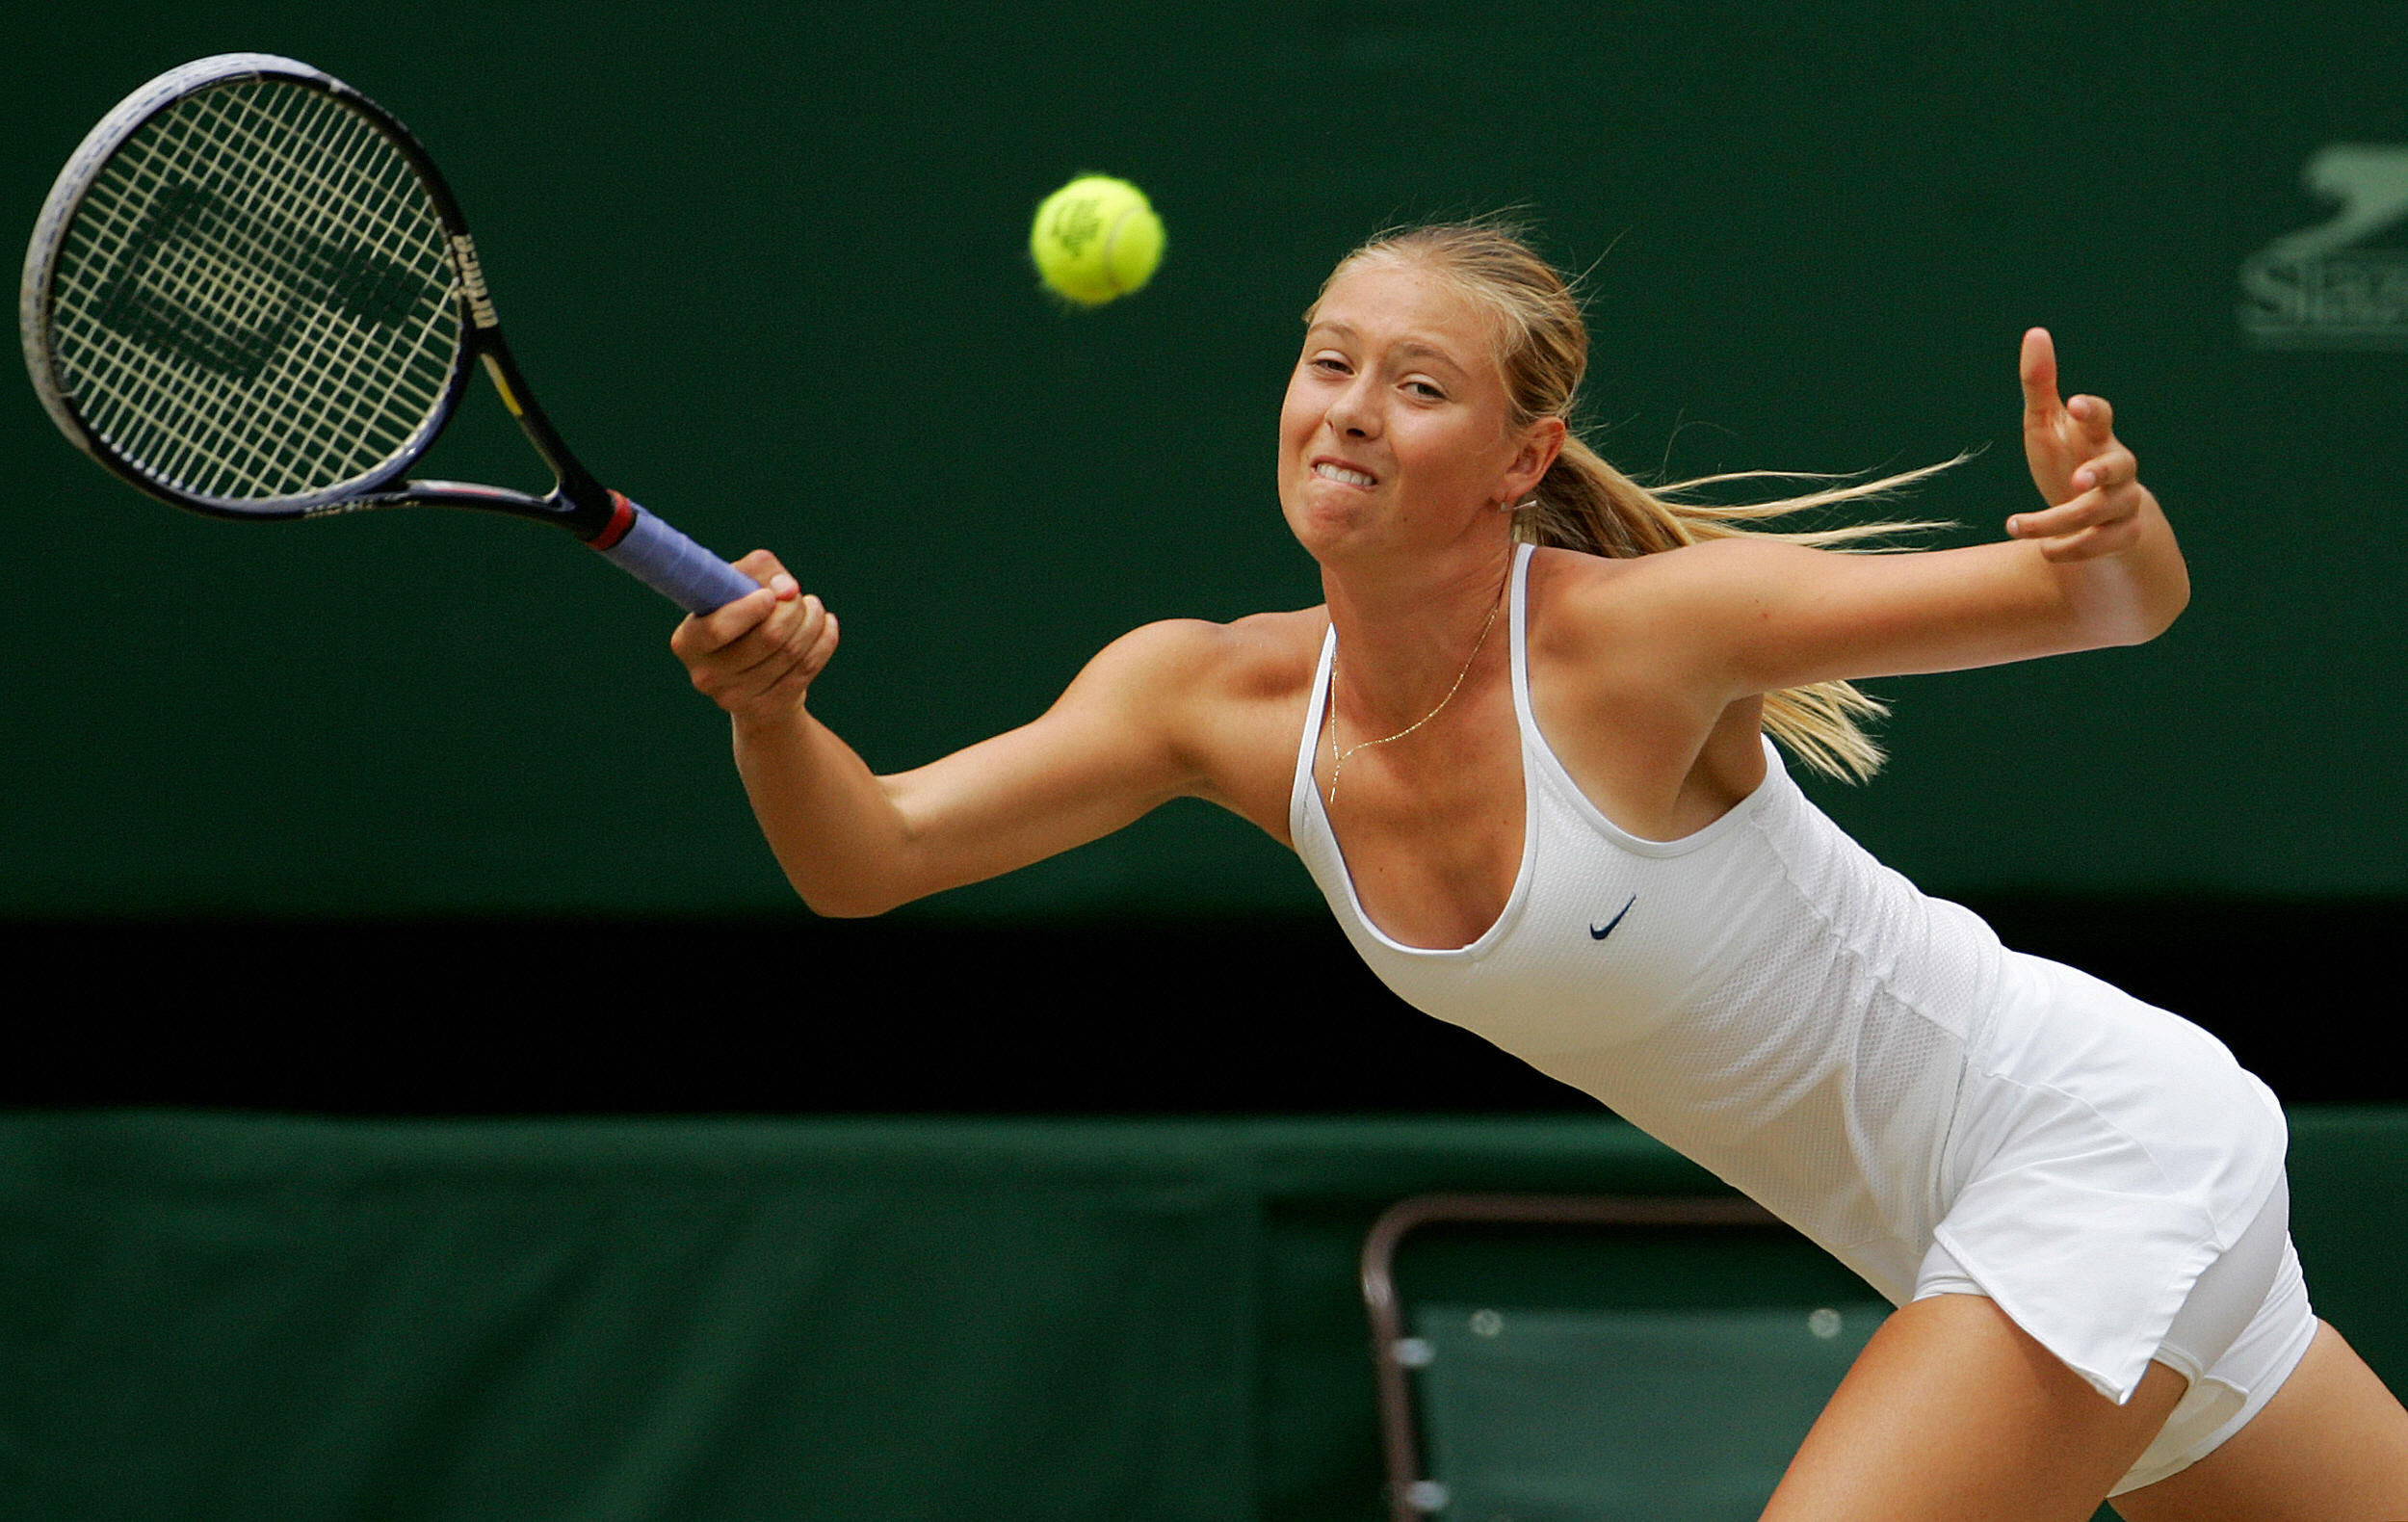 Maria Scharapowa erlangte mit ihren Leistungen auf dem Tennisplatz legendären Status